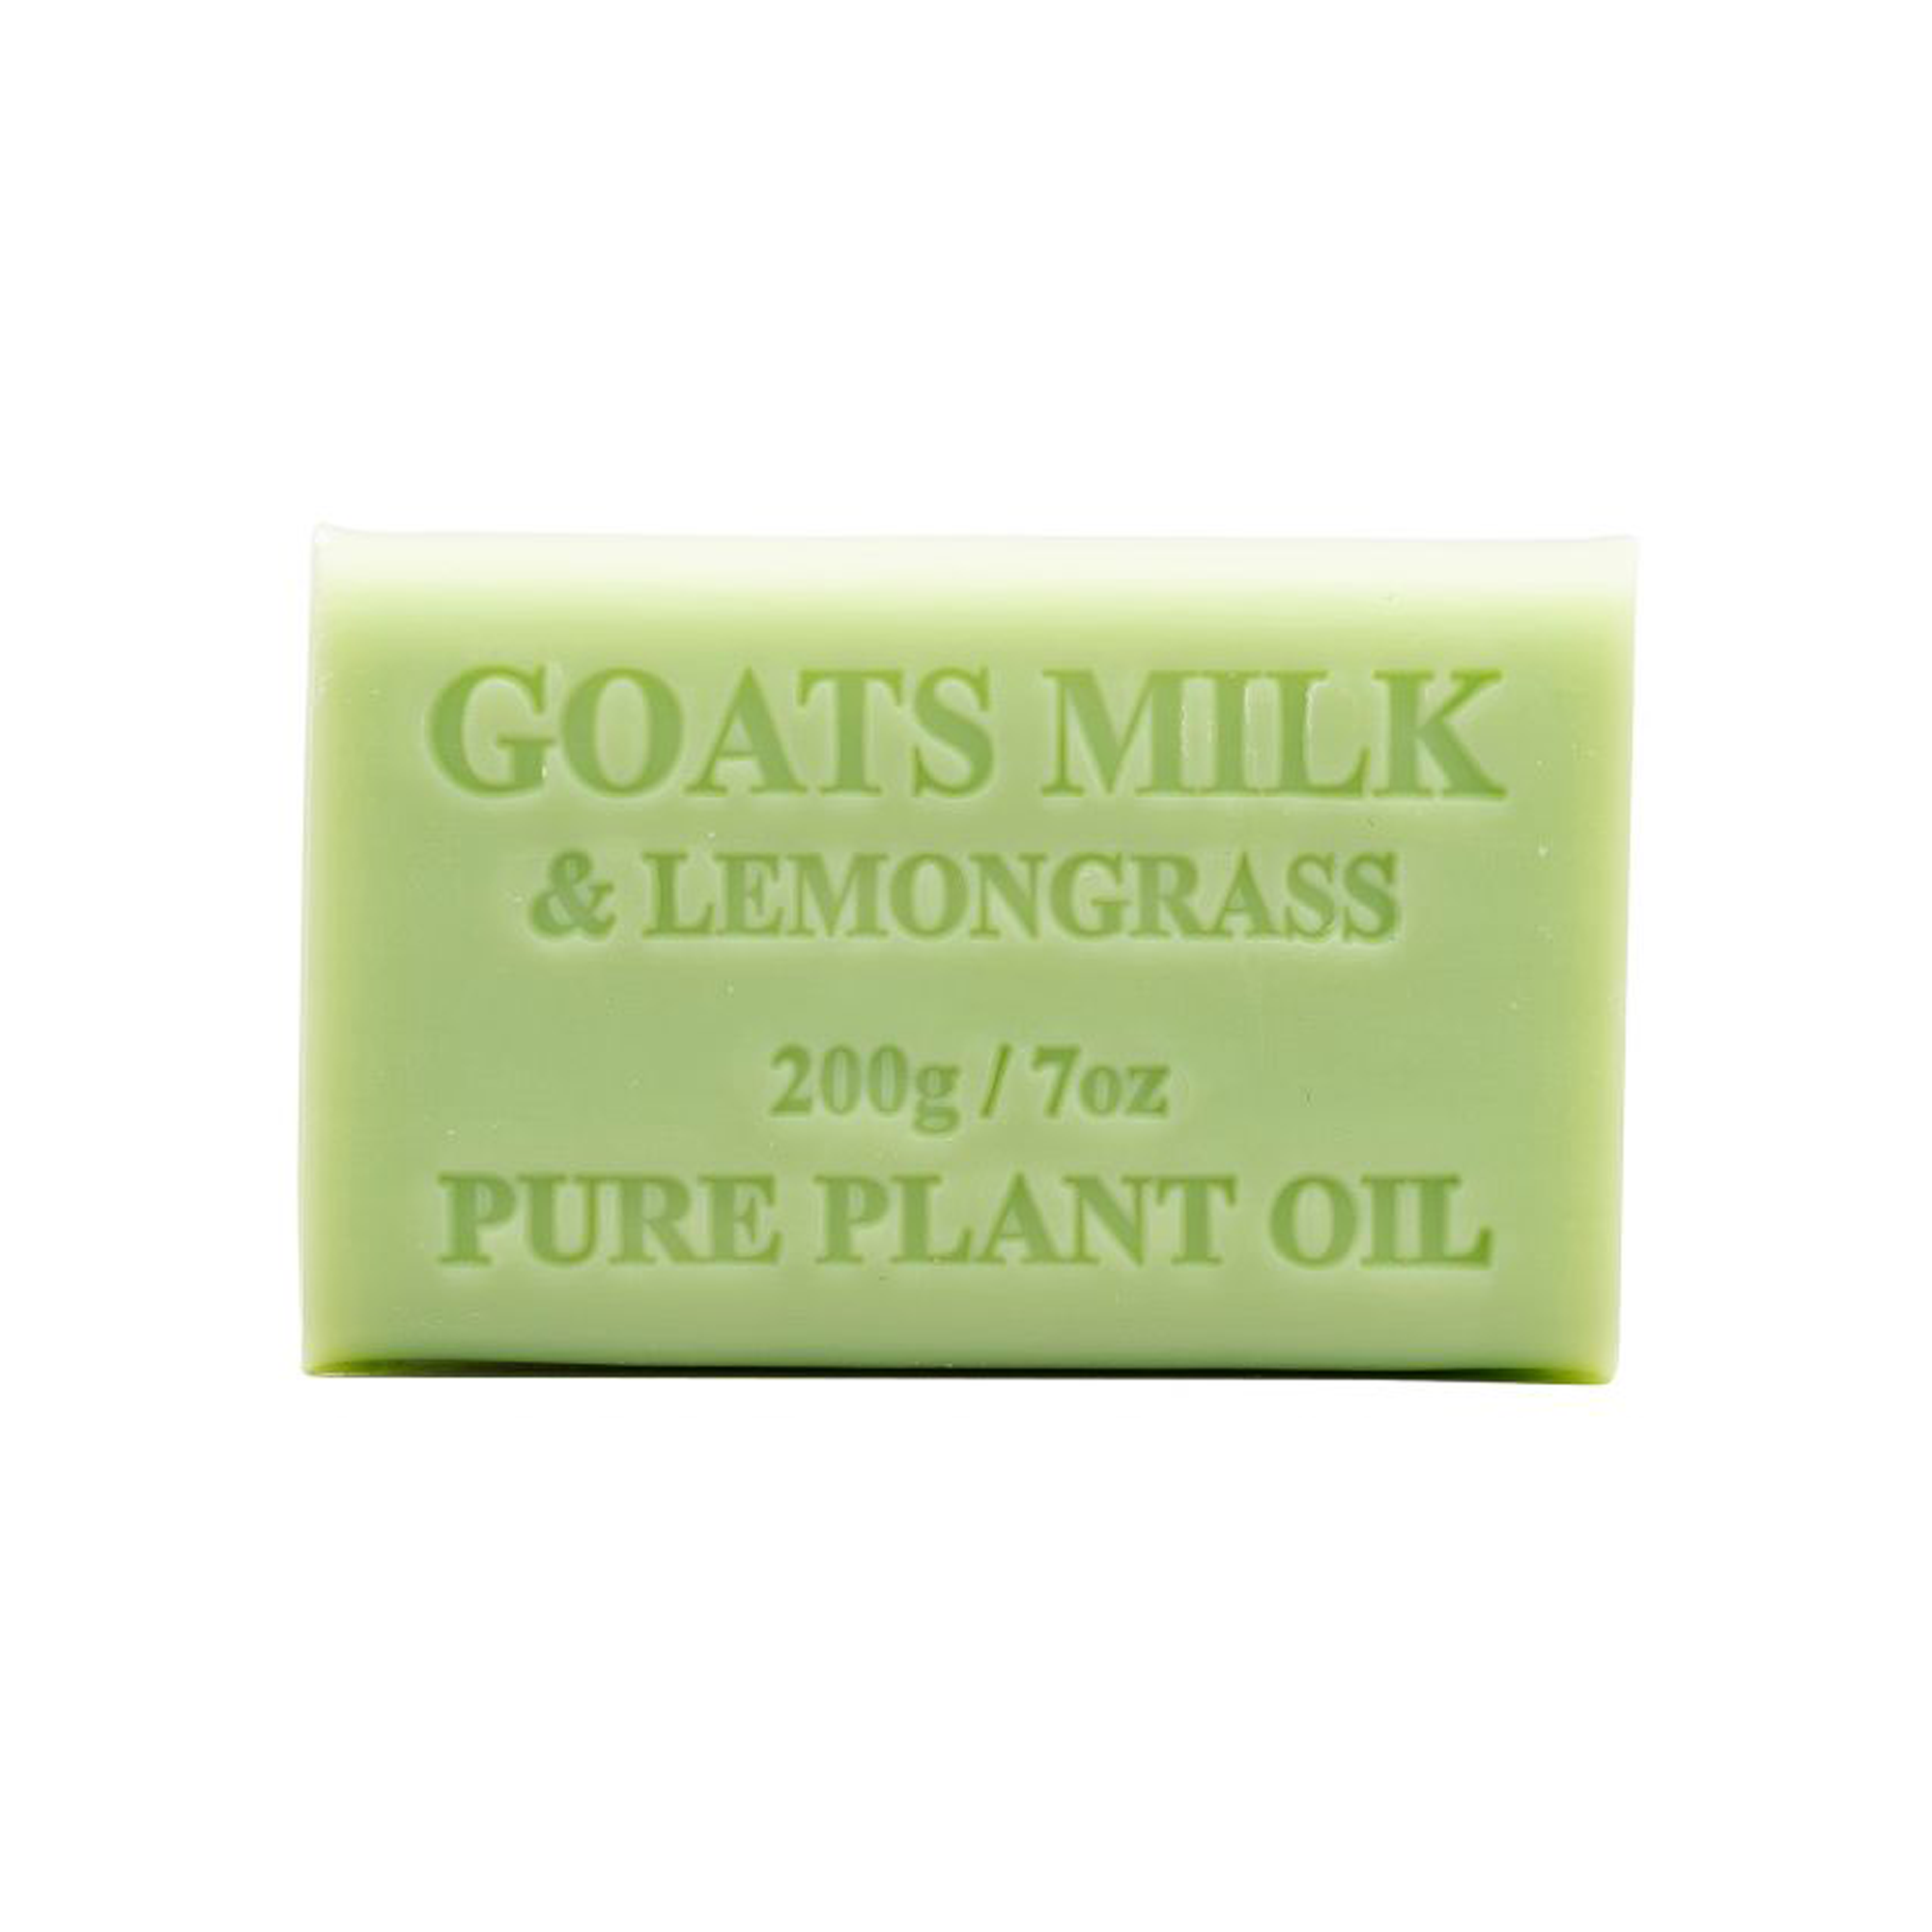 Goats Milk and Lemongrass 200g